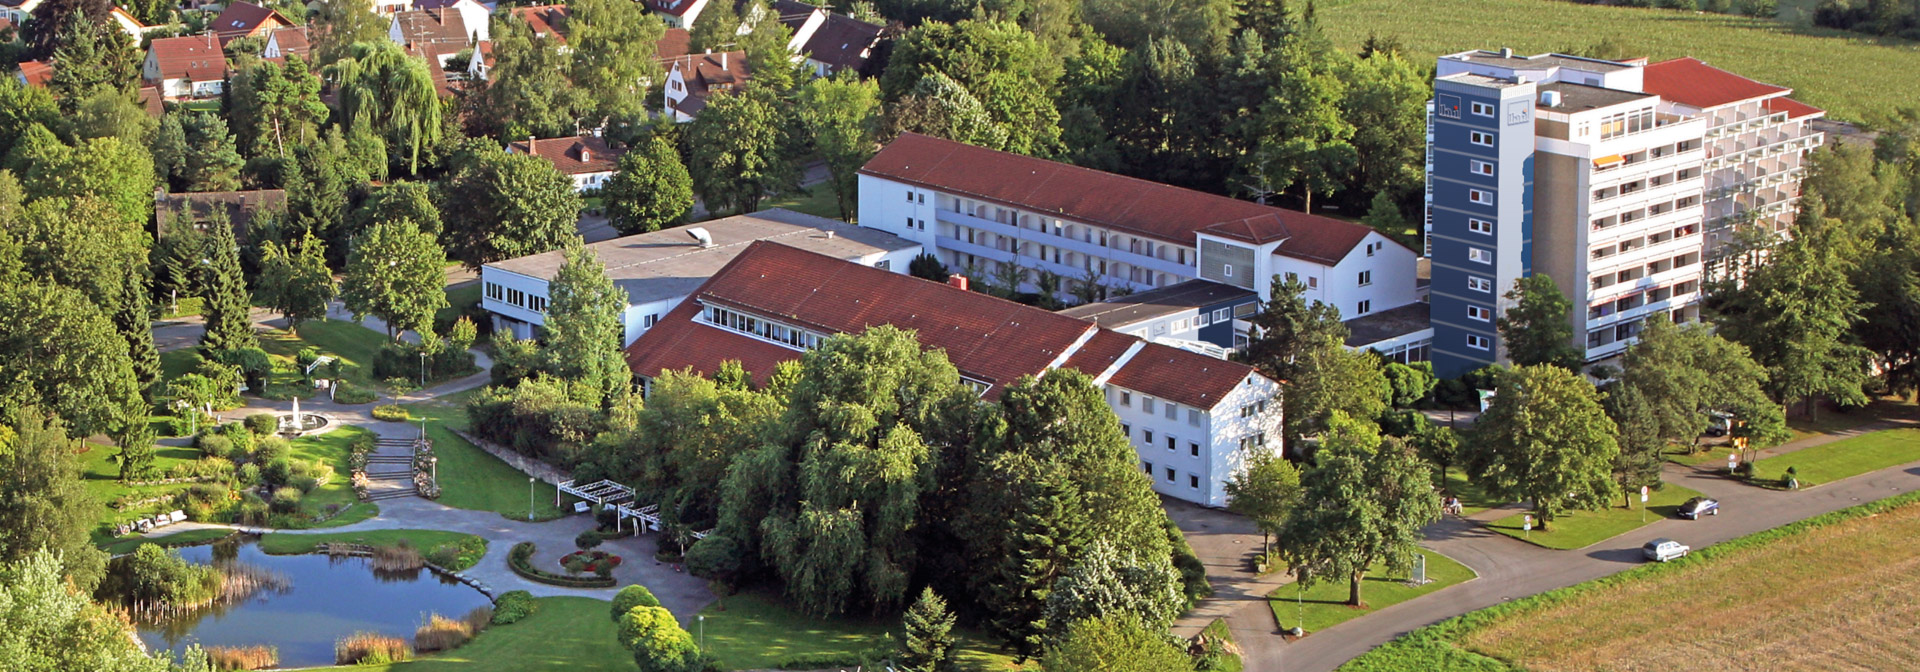 Luftbild des Gebäudekomplexes in Bad Schussenried